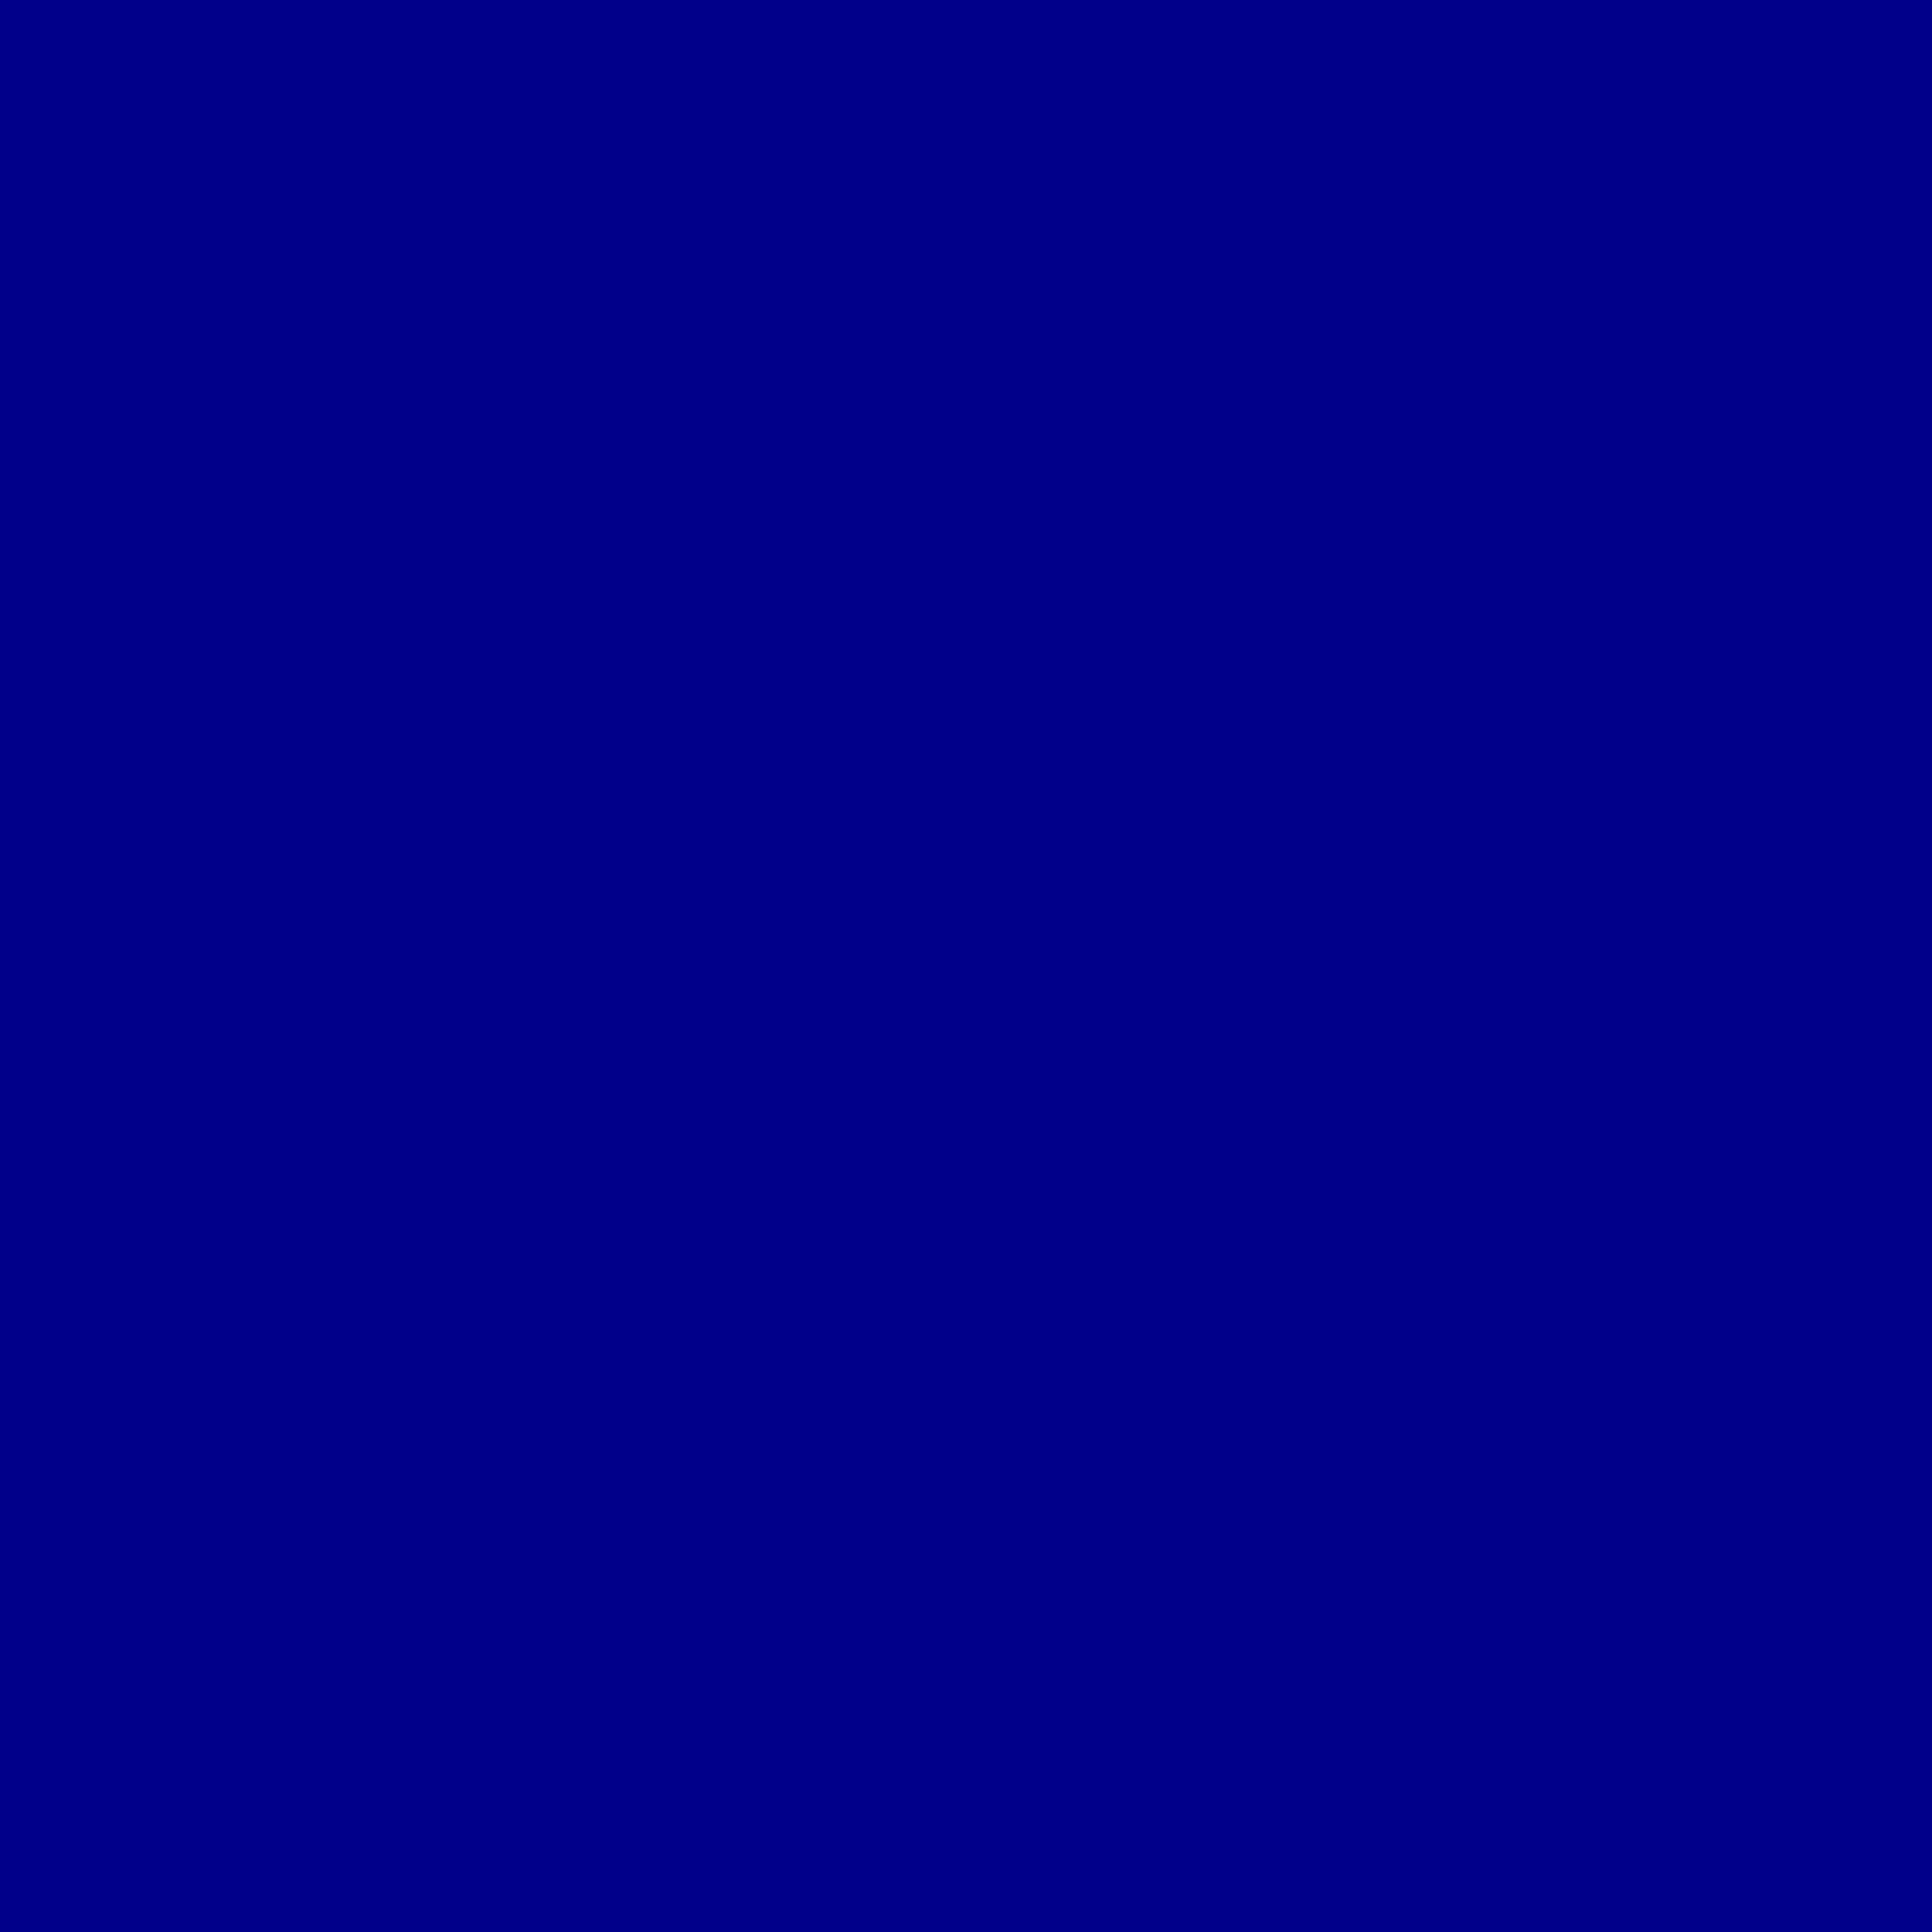 dark blue color wallpaper,cobalt blue,blue,violet,electric blue,black